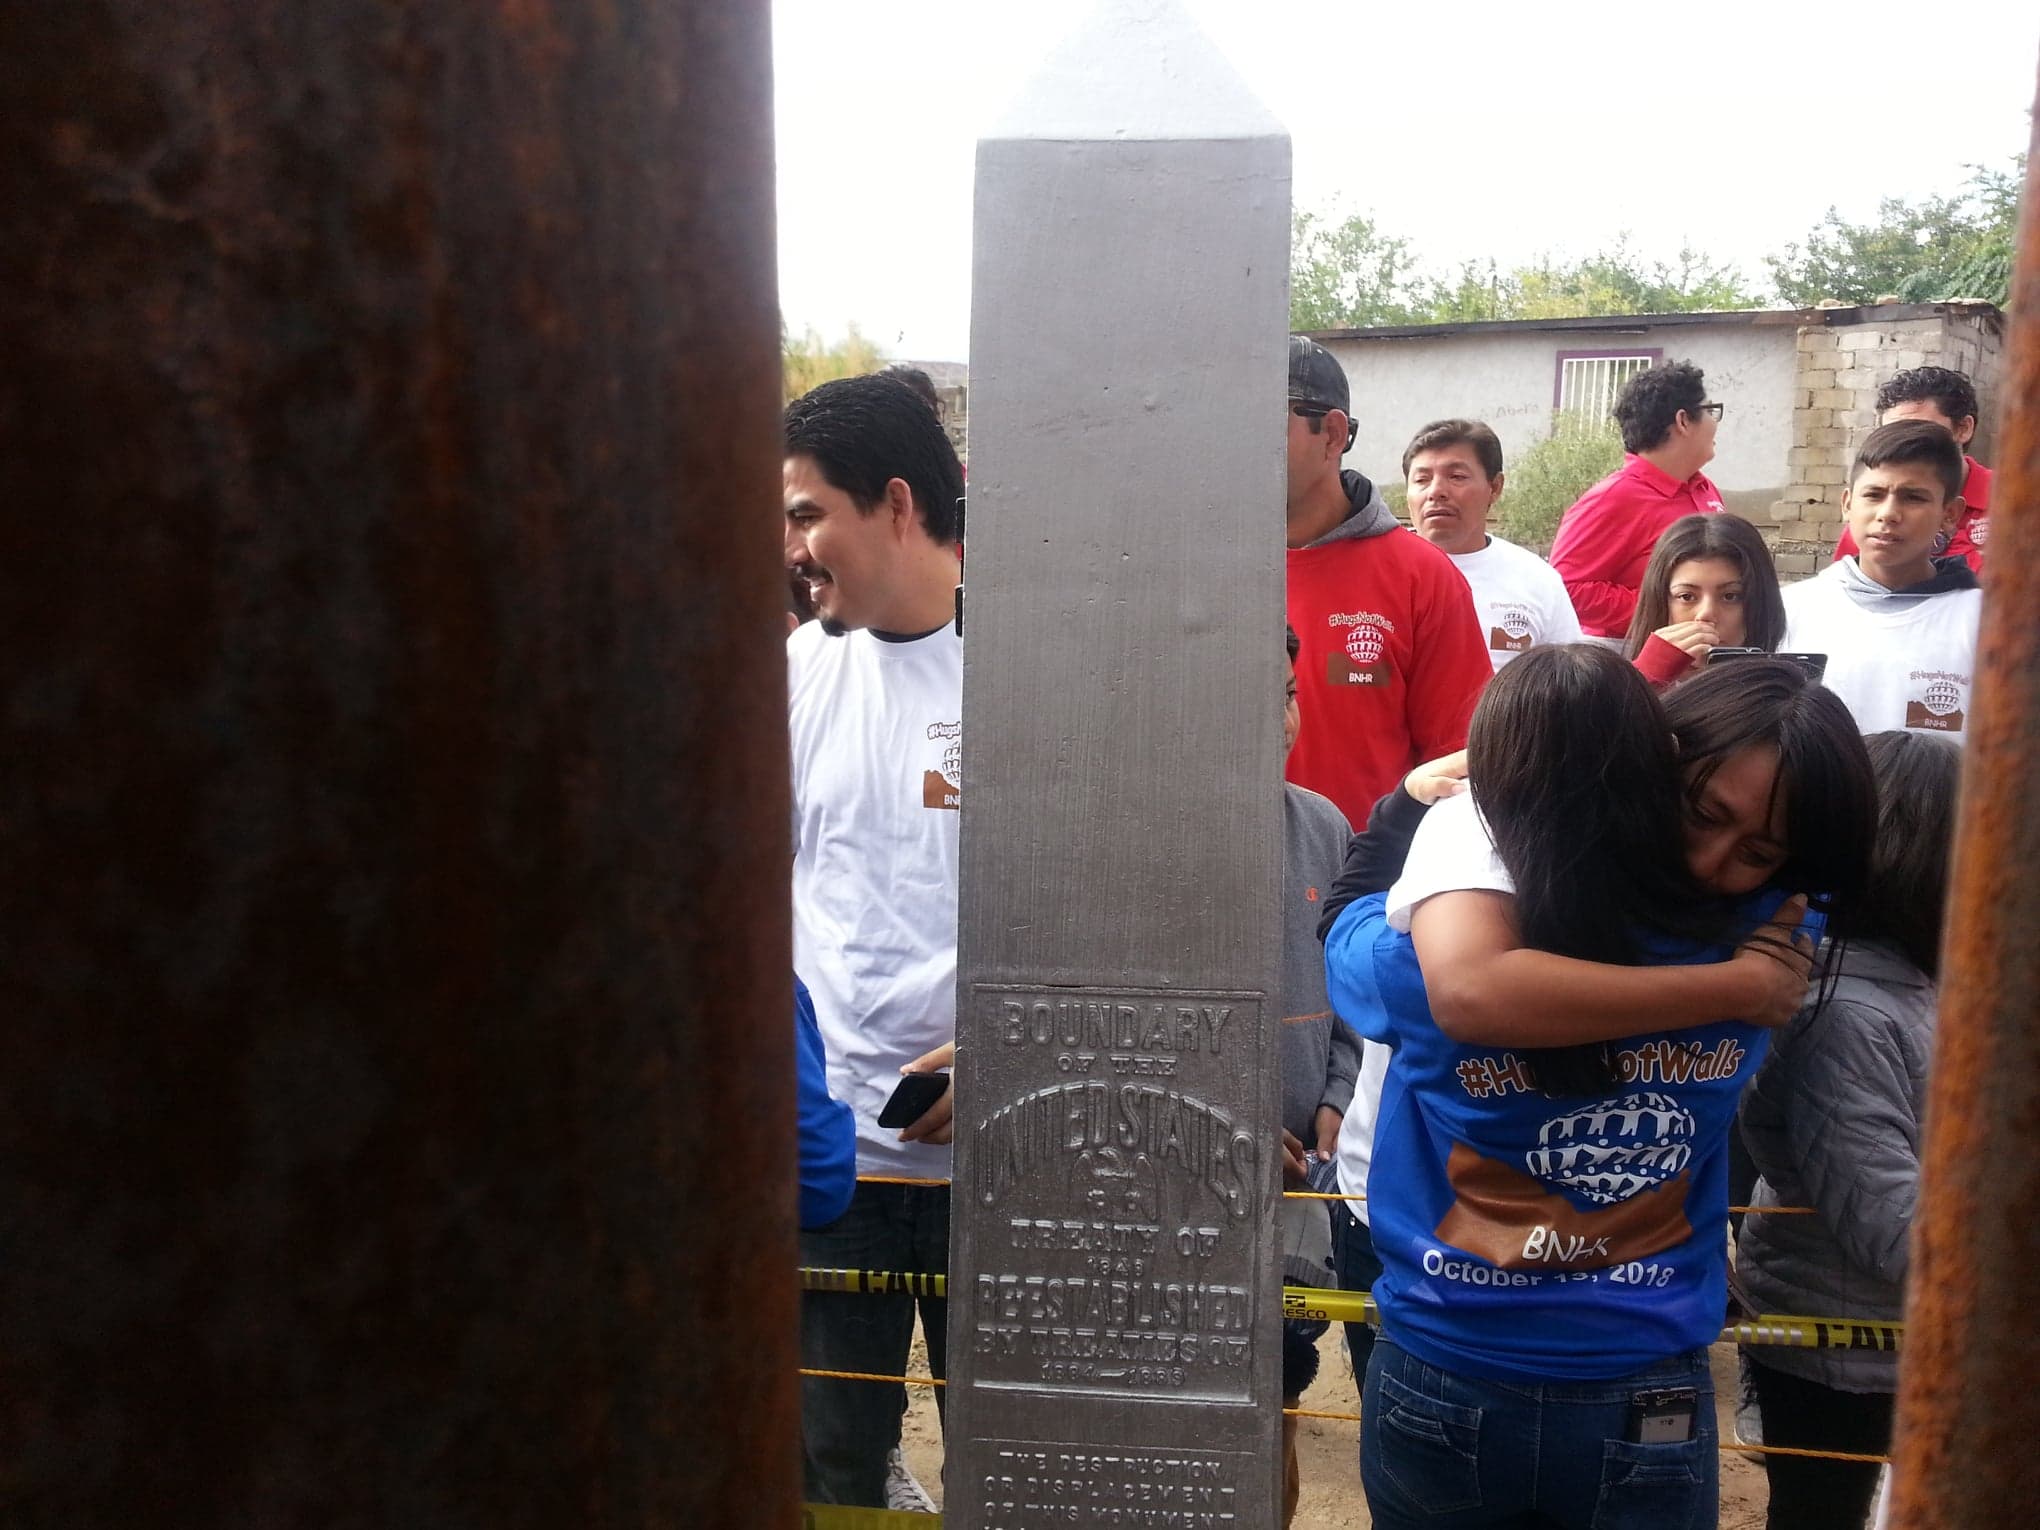  Cerca de 250 familias se abrazan pese al muro en la frontera de Nuevo México